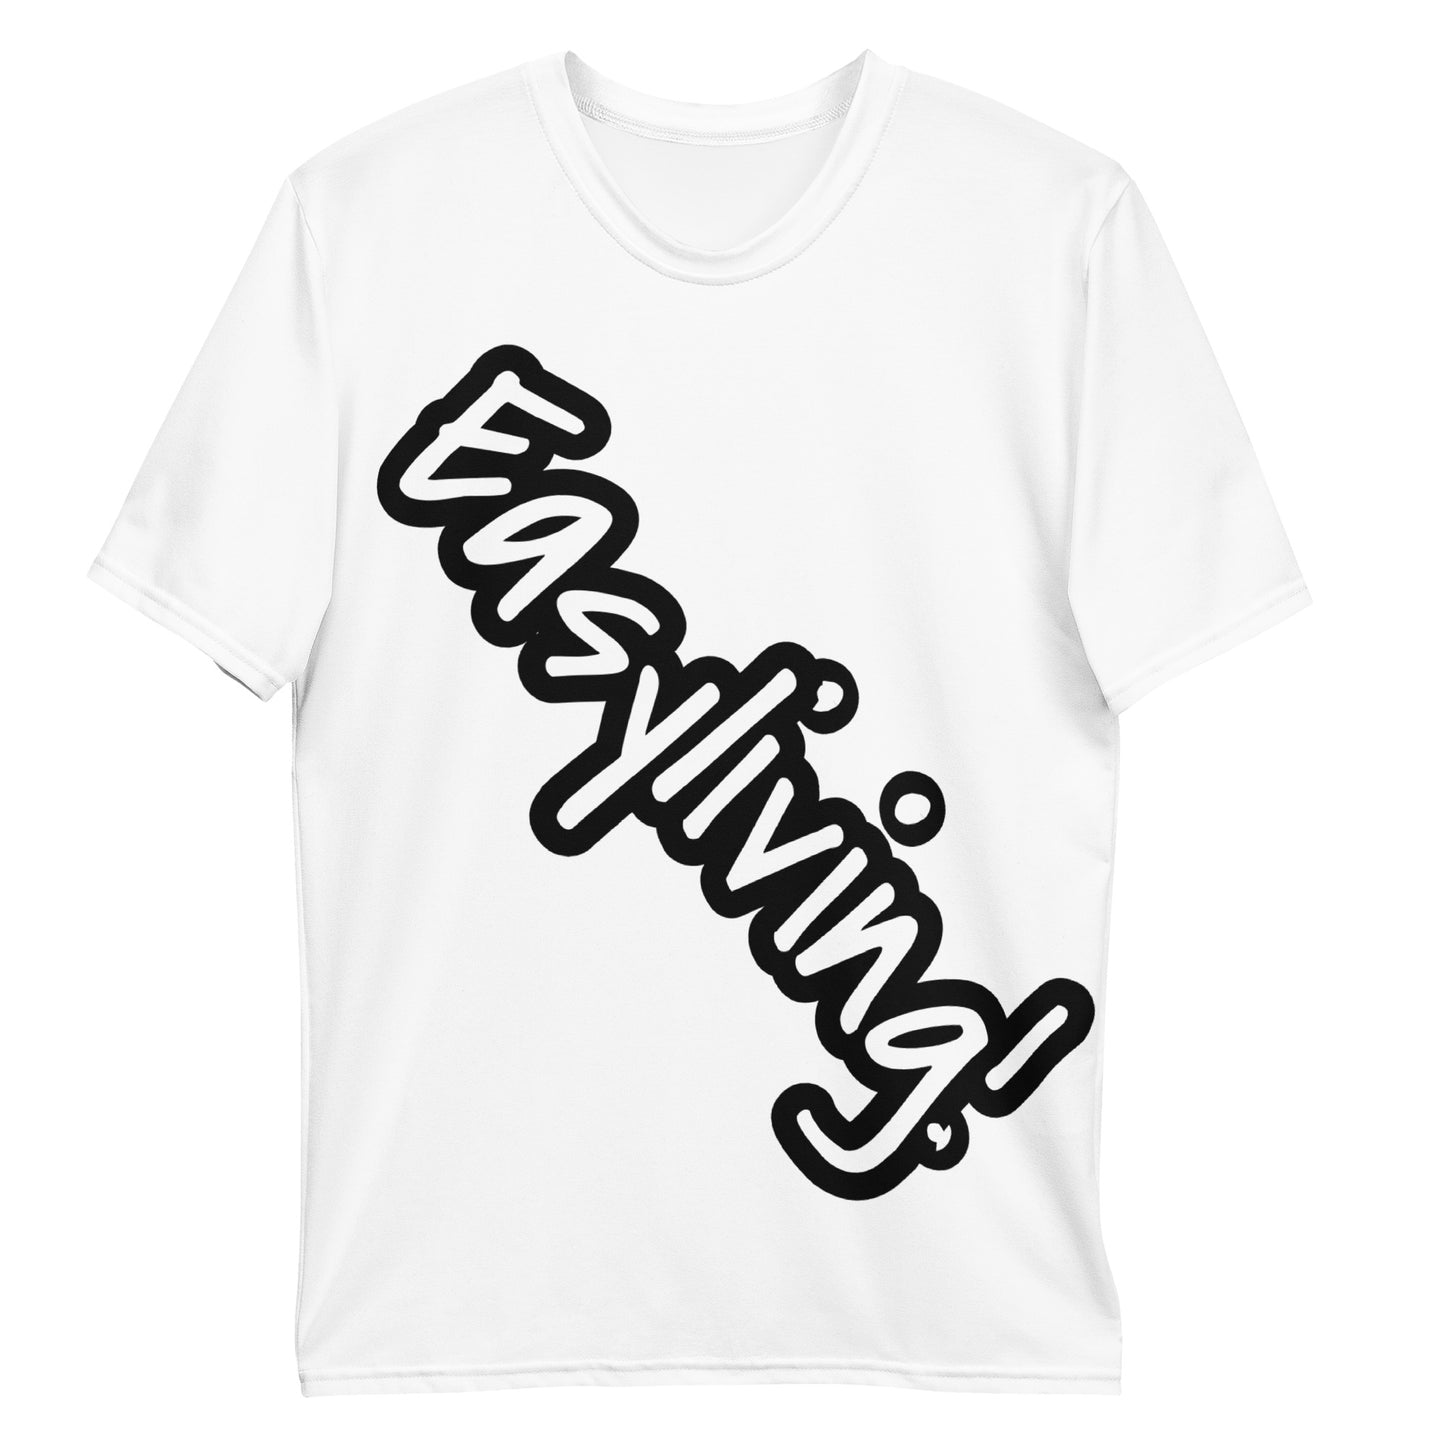 Easyliving! Logo Men's t-shirt - White